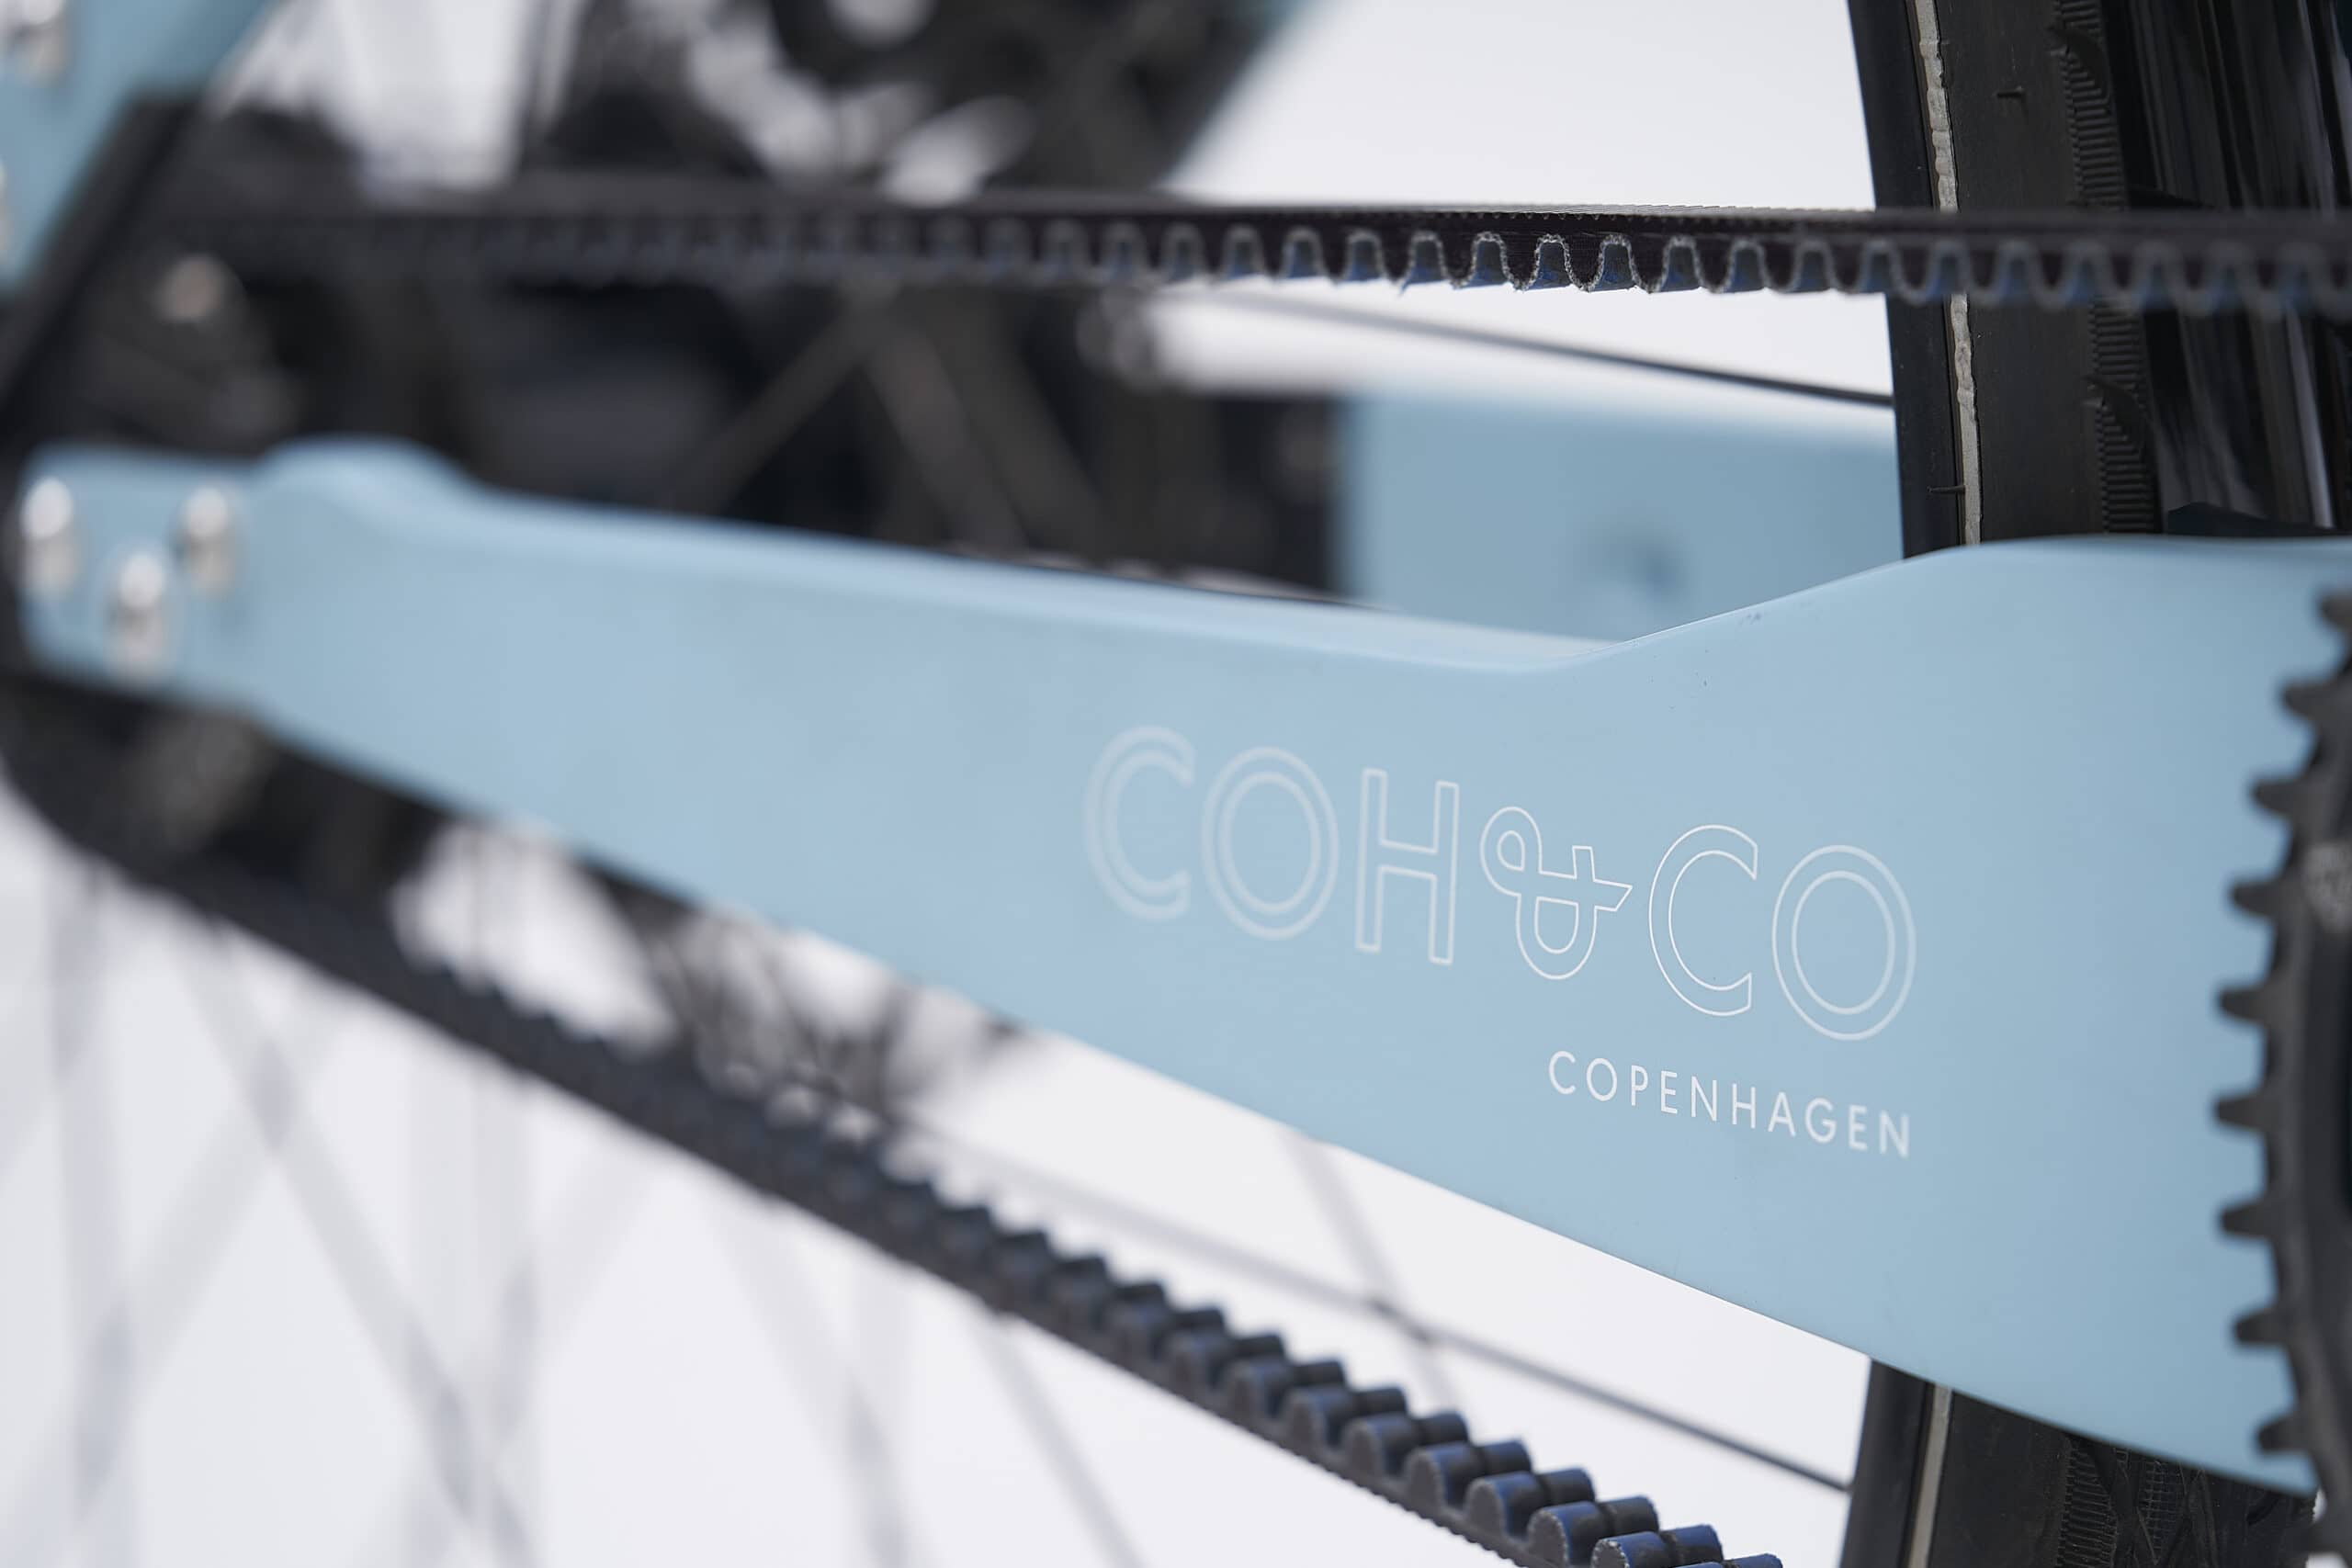 Coh&Co und minimalistisches dänisches Design